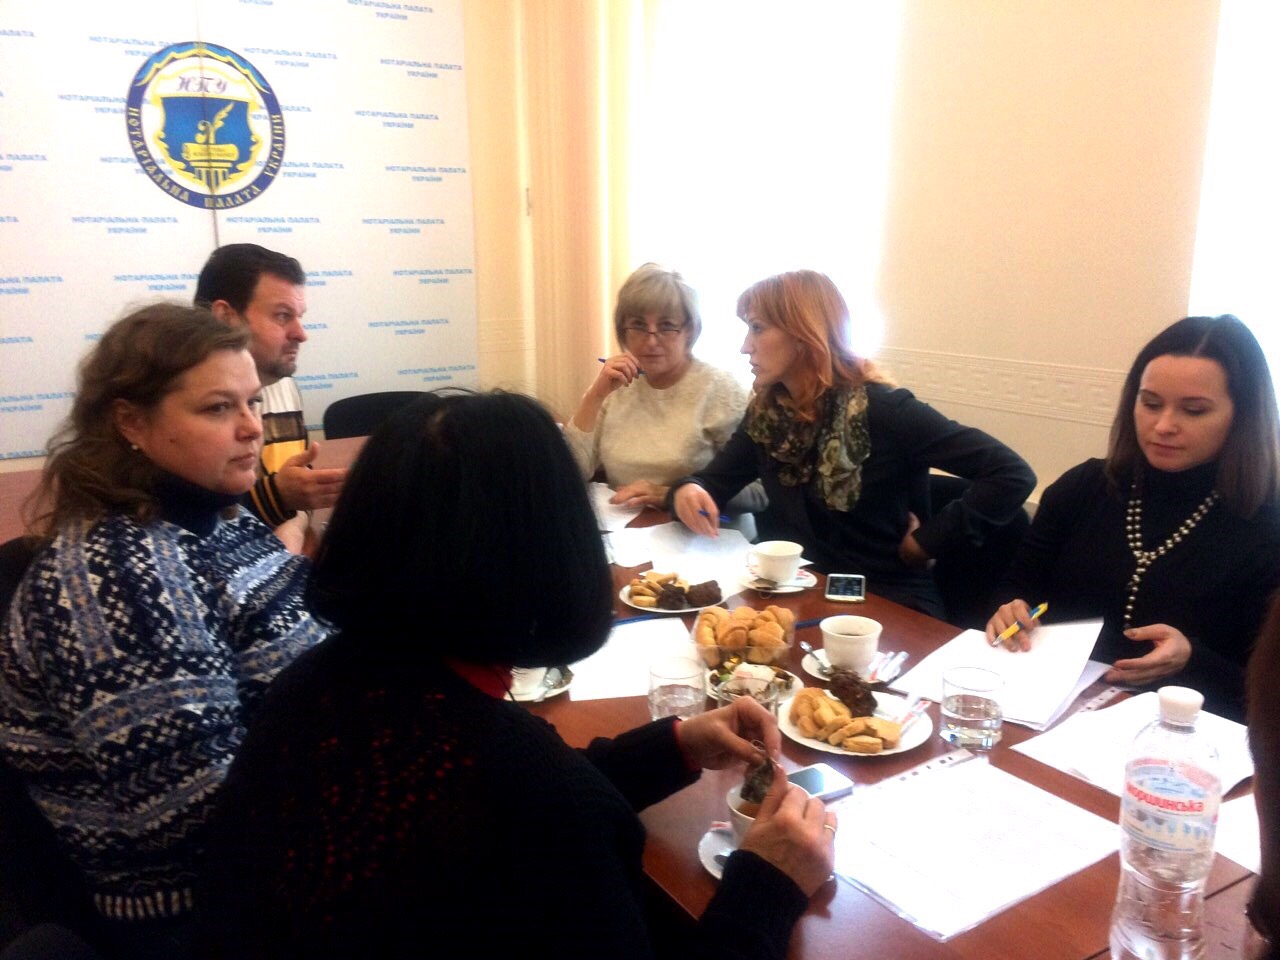          16 листопада 2016 року відбулося засідання Комісії Нотаріальної палати України з питань соціального захисту та професійних прав нотаріусів.
